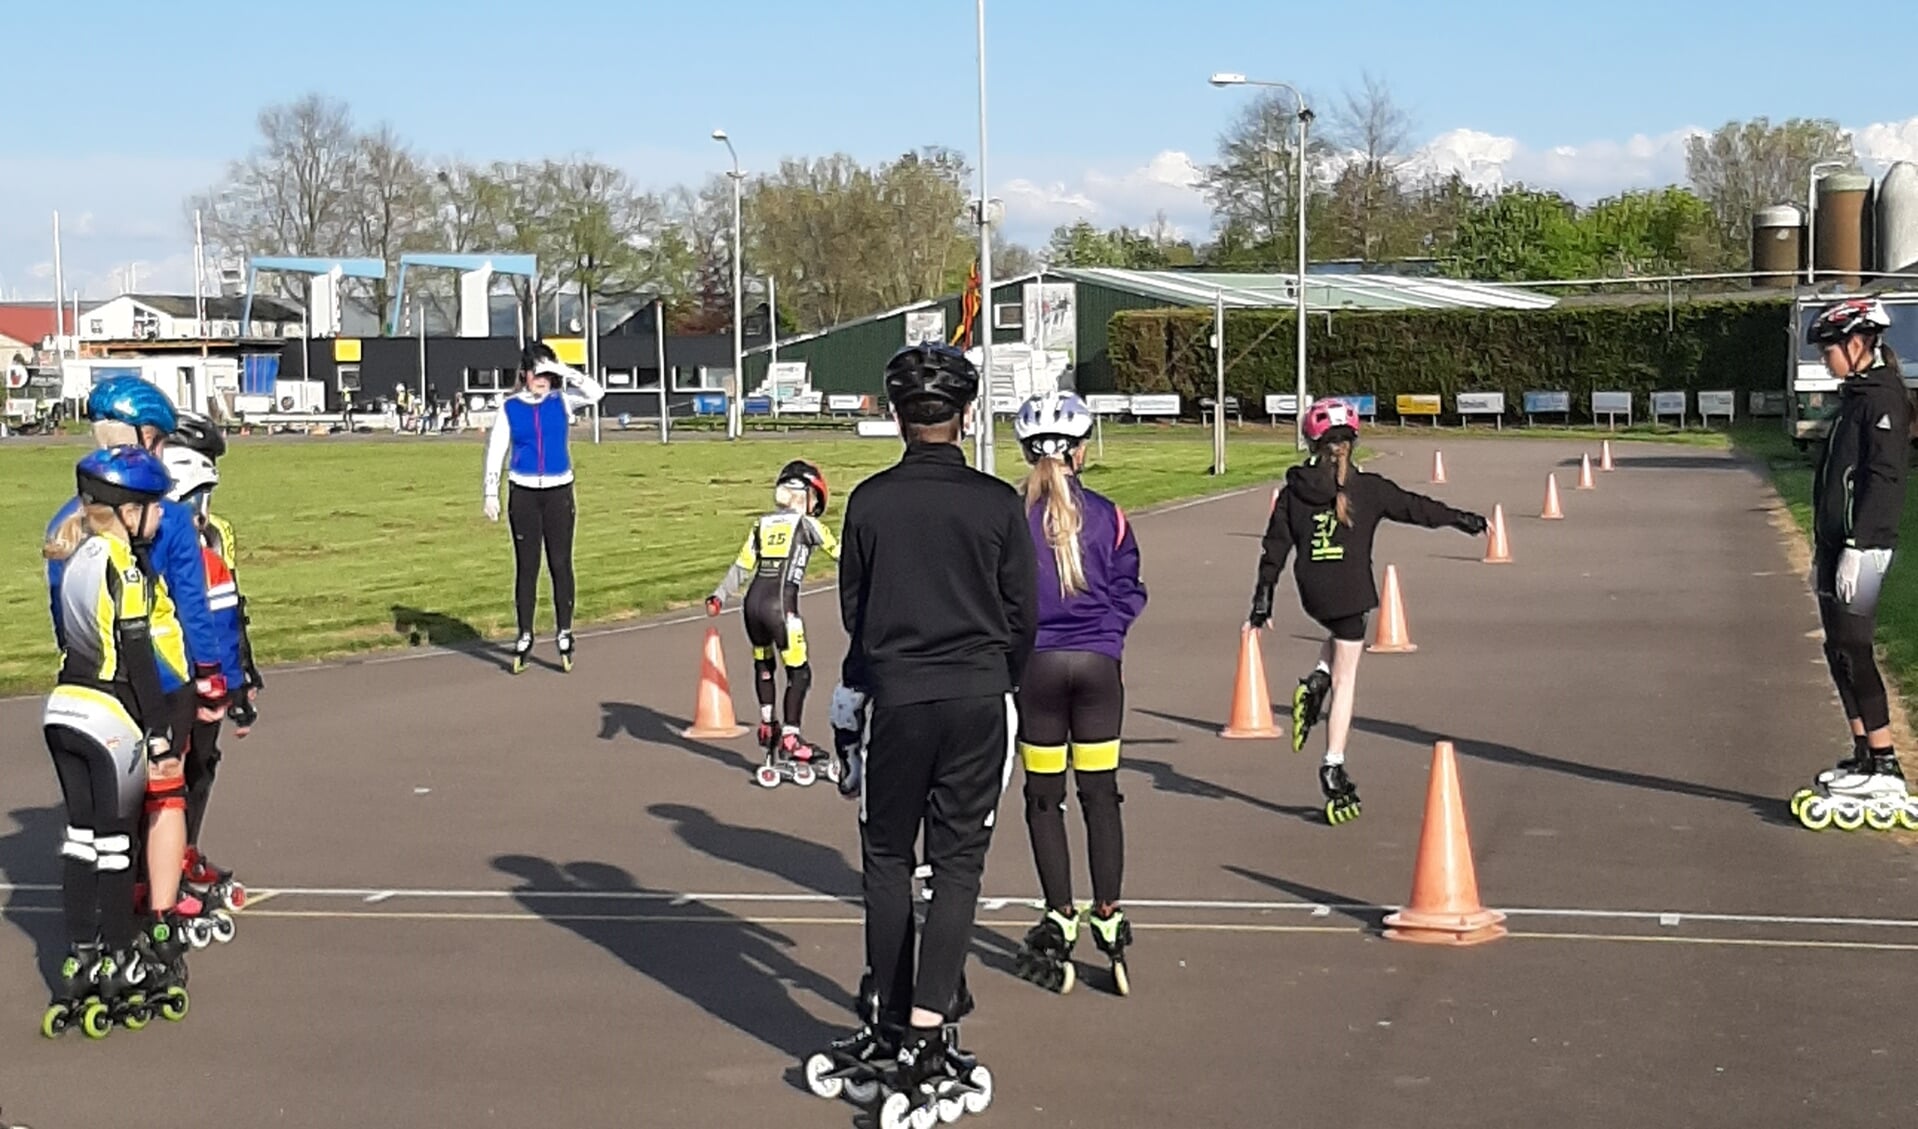 bestuurder Generaliseren Sociologie Skeeleren leren bij Radboud Inline-skating in gemeente Medemblik | Al het  nieuws uit Medemblik